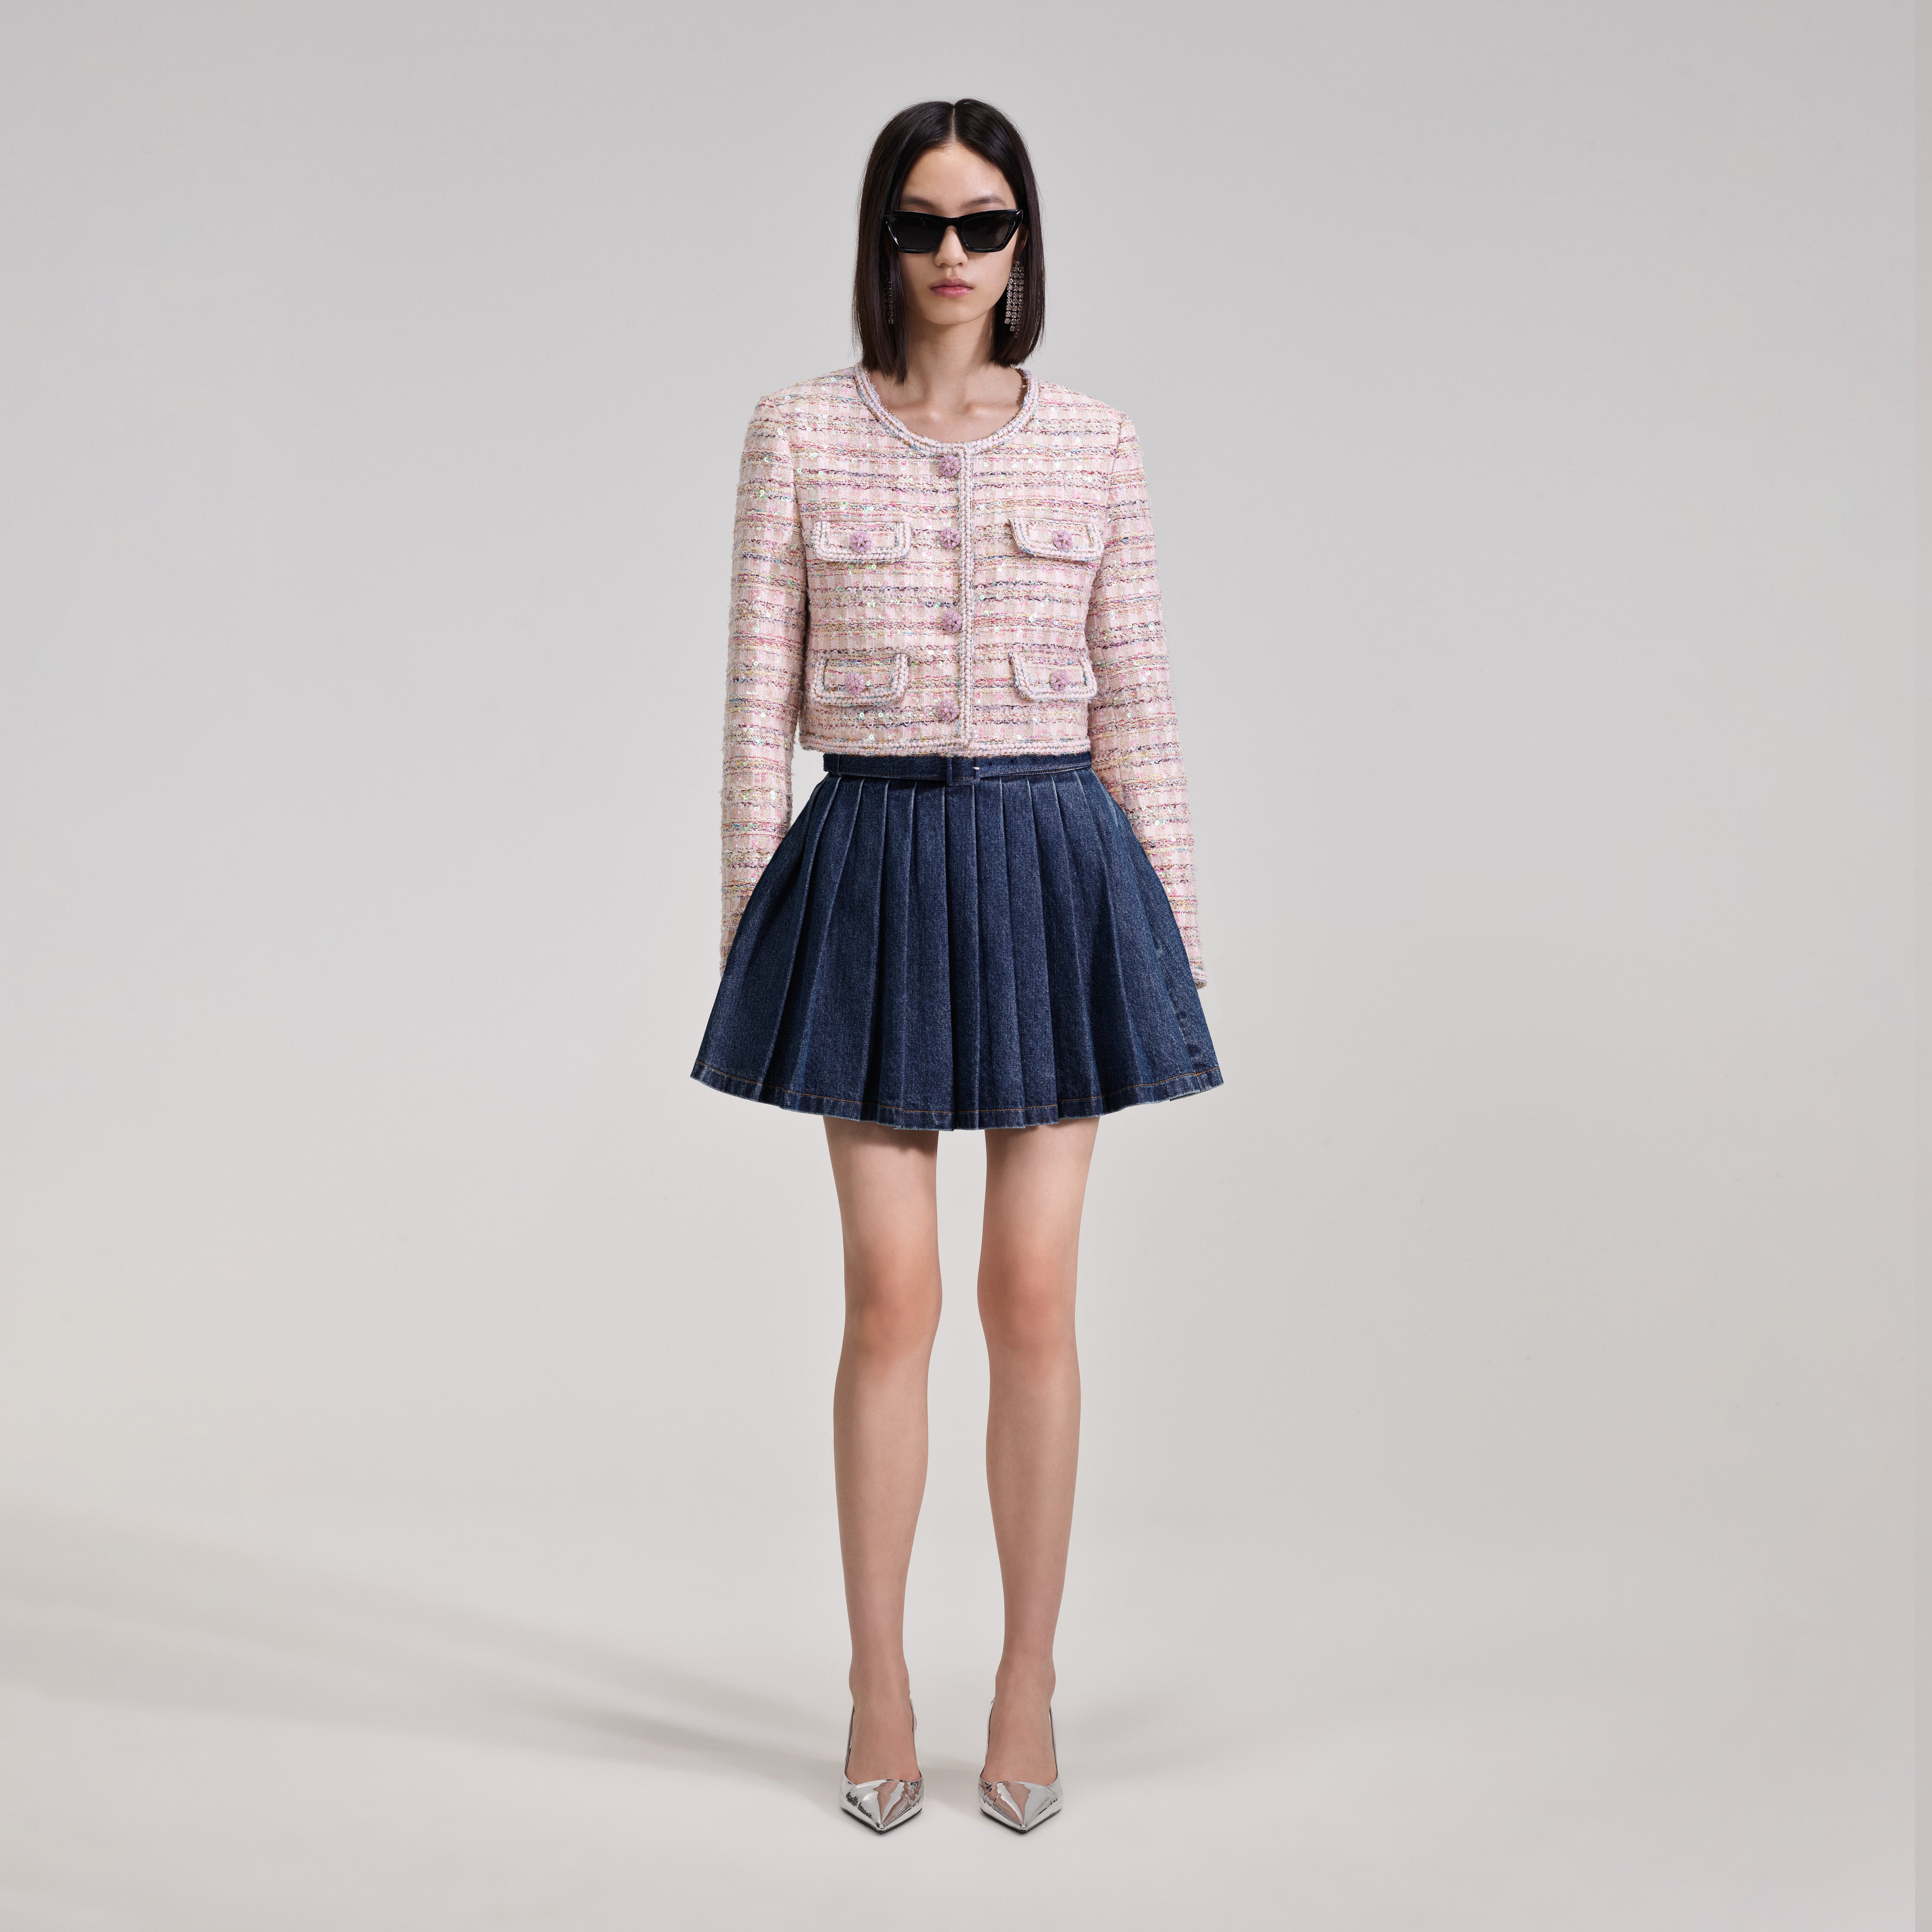 Denim Mini Pleated Skirt Size Waist cm Hip cm Length cm S 64-72 79